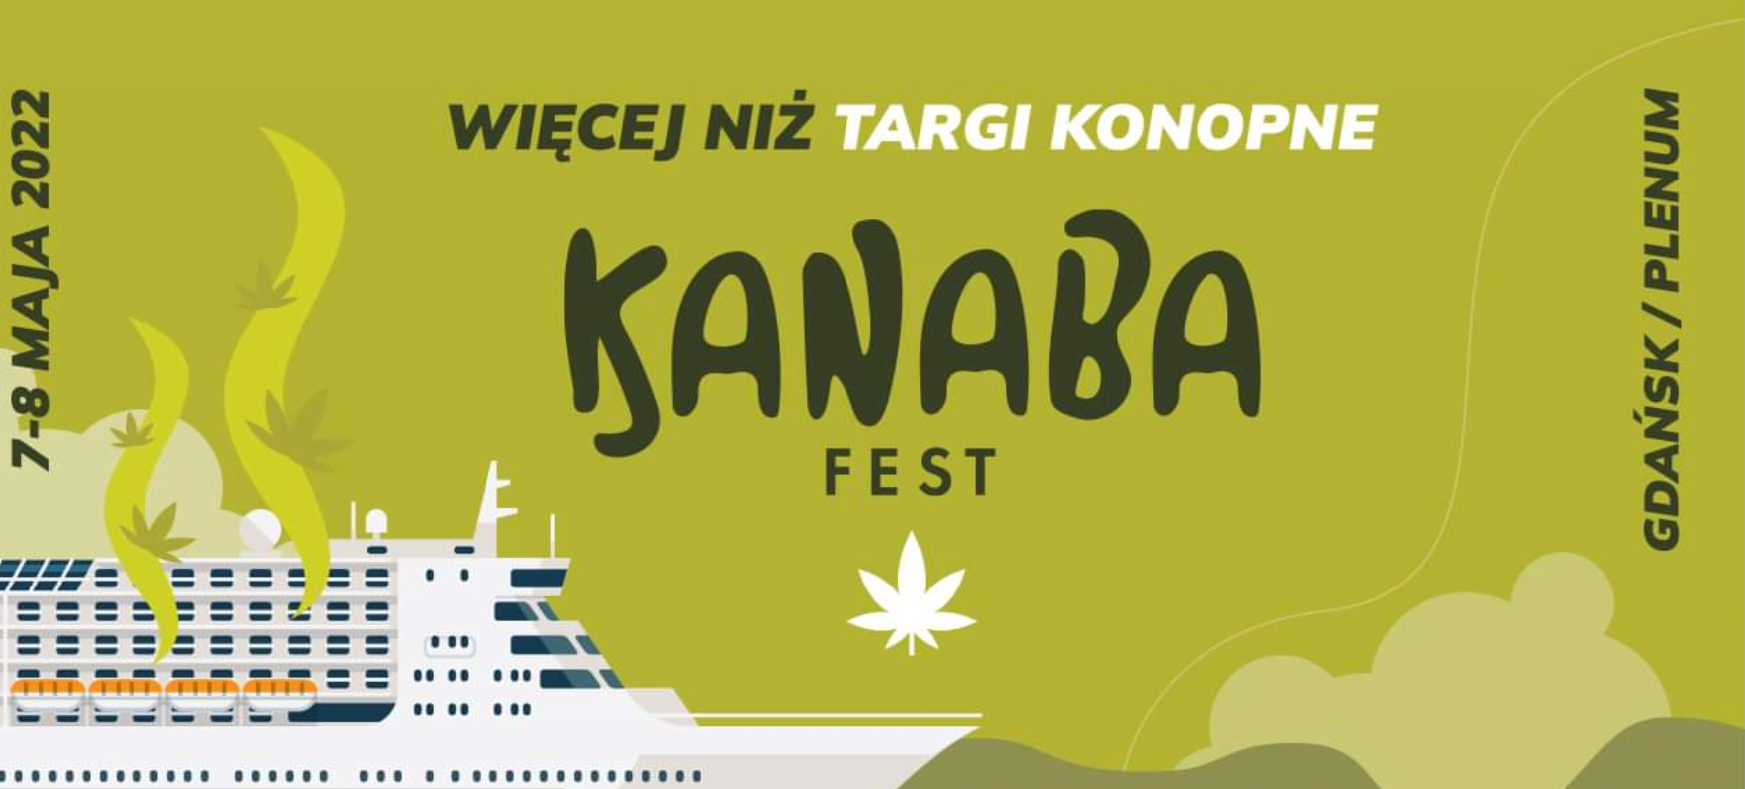 Featured image for “Tým Nukaseeds se minulý víkend zúčastnil festivalu konopí Kanaba Fest v Gdaňsku a bylo toho hodně k vidění.”